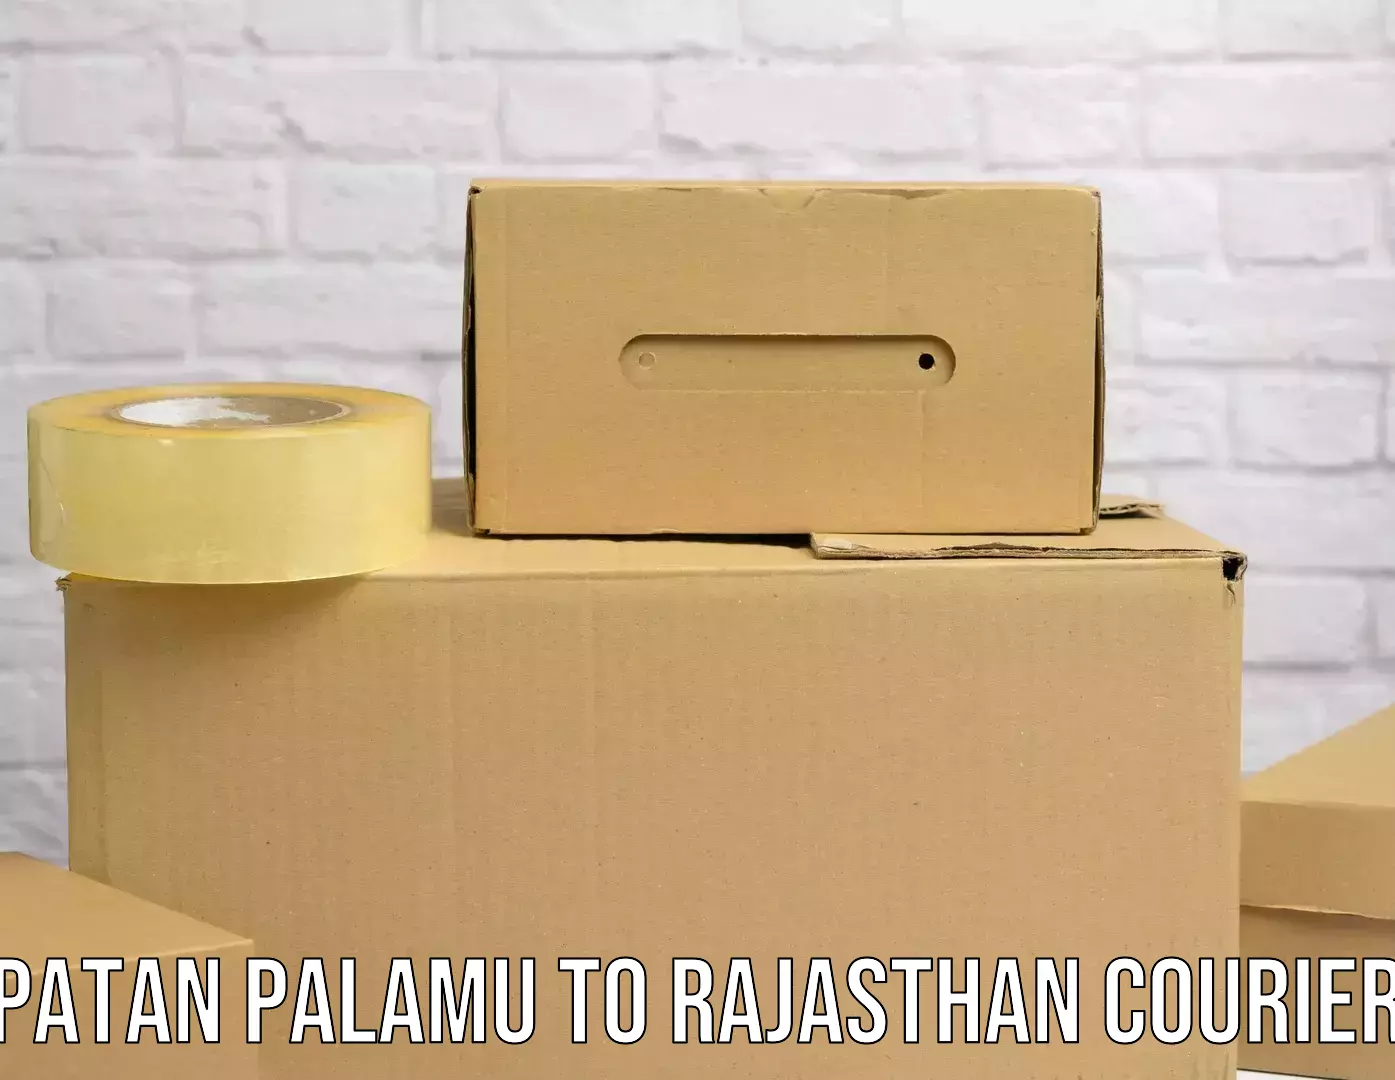 Fast shipping solutions Patan Palamu to Kankroli